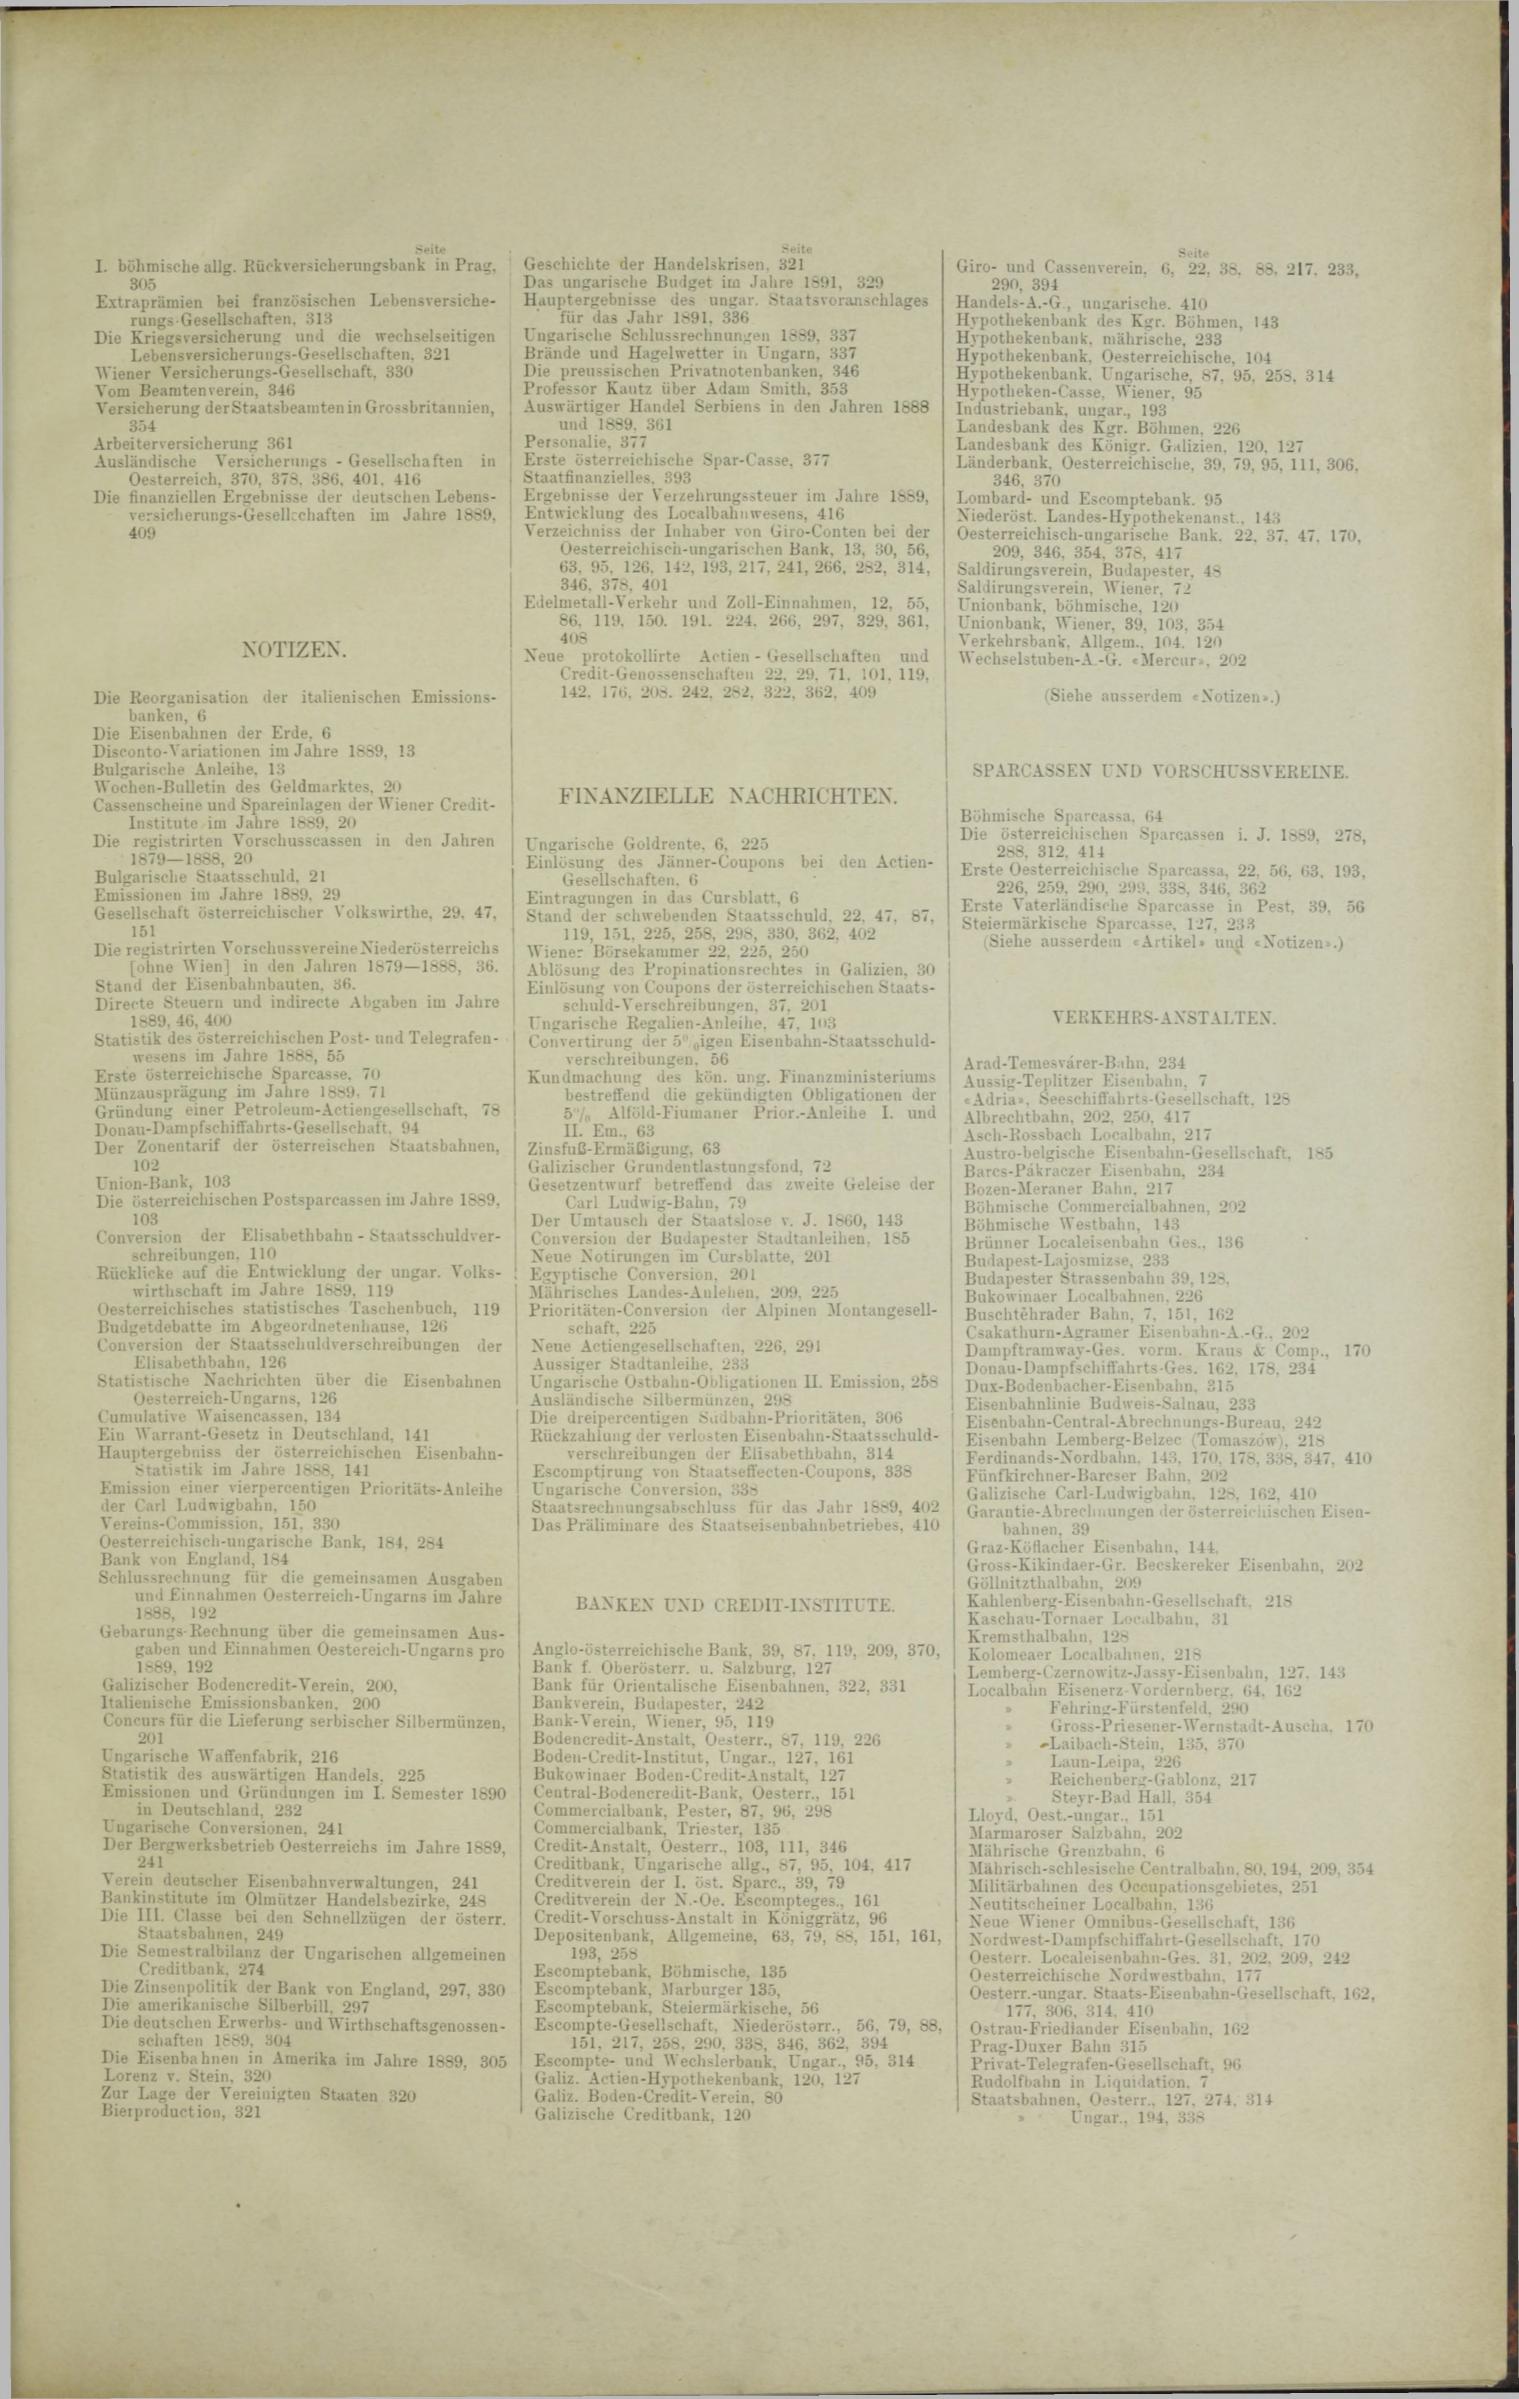 Der Tresor 07.08.1890 - Seite 11